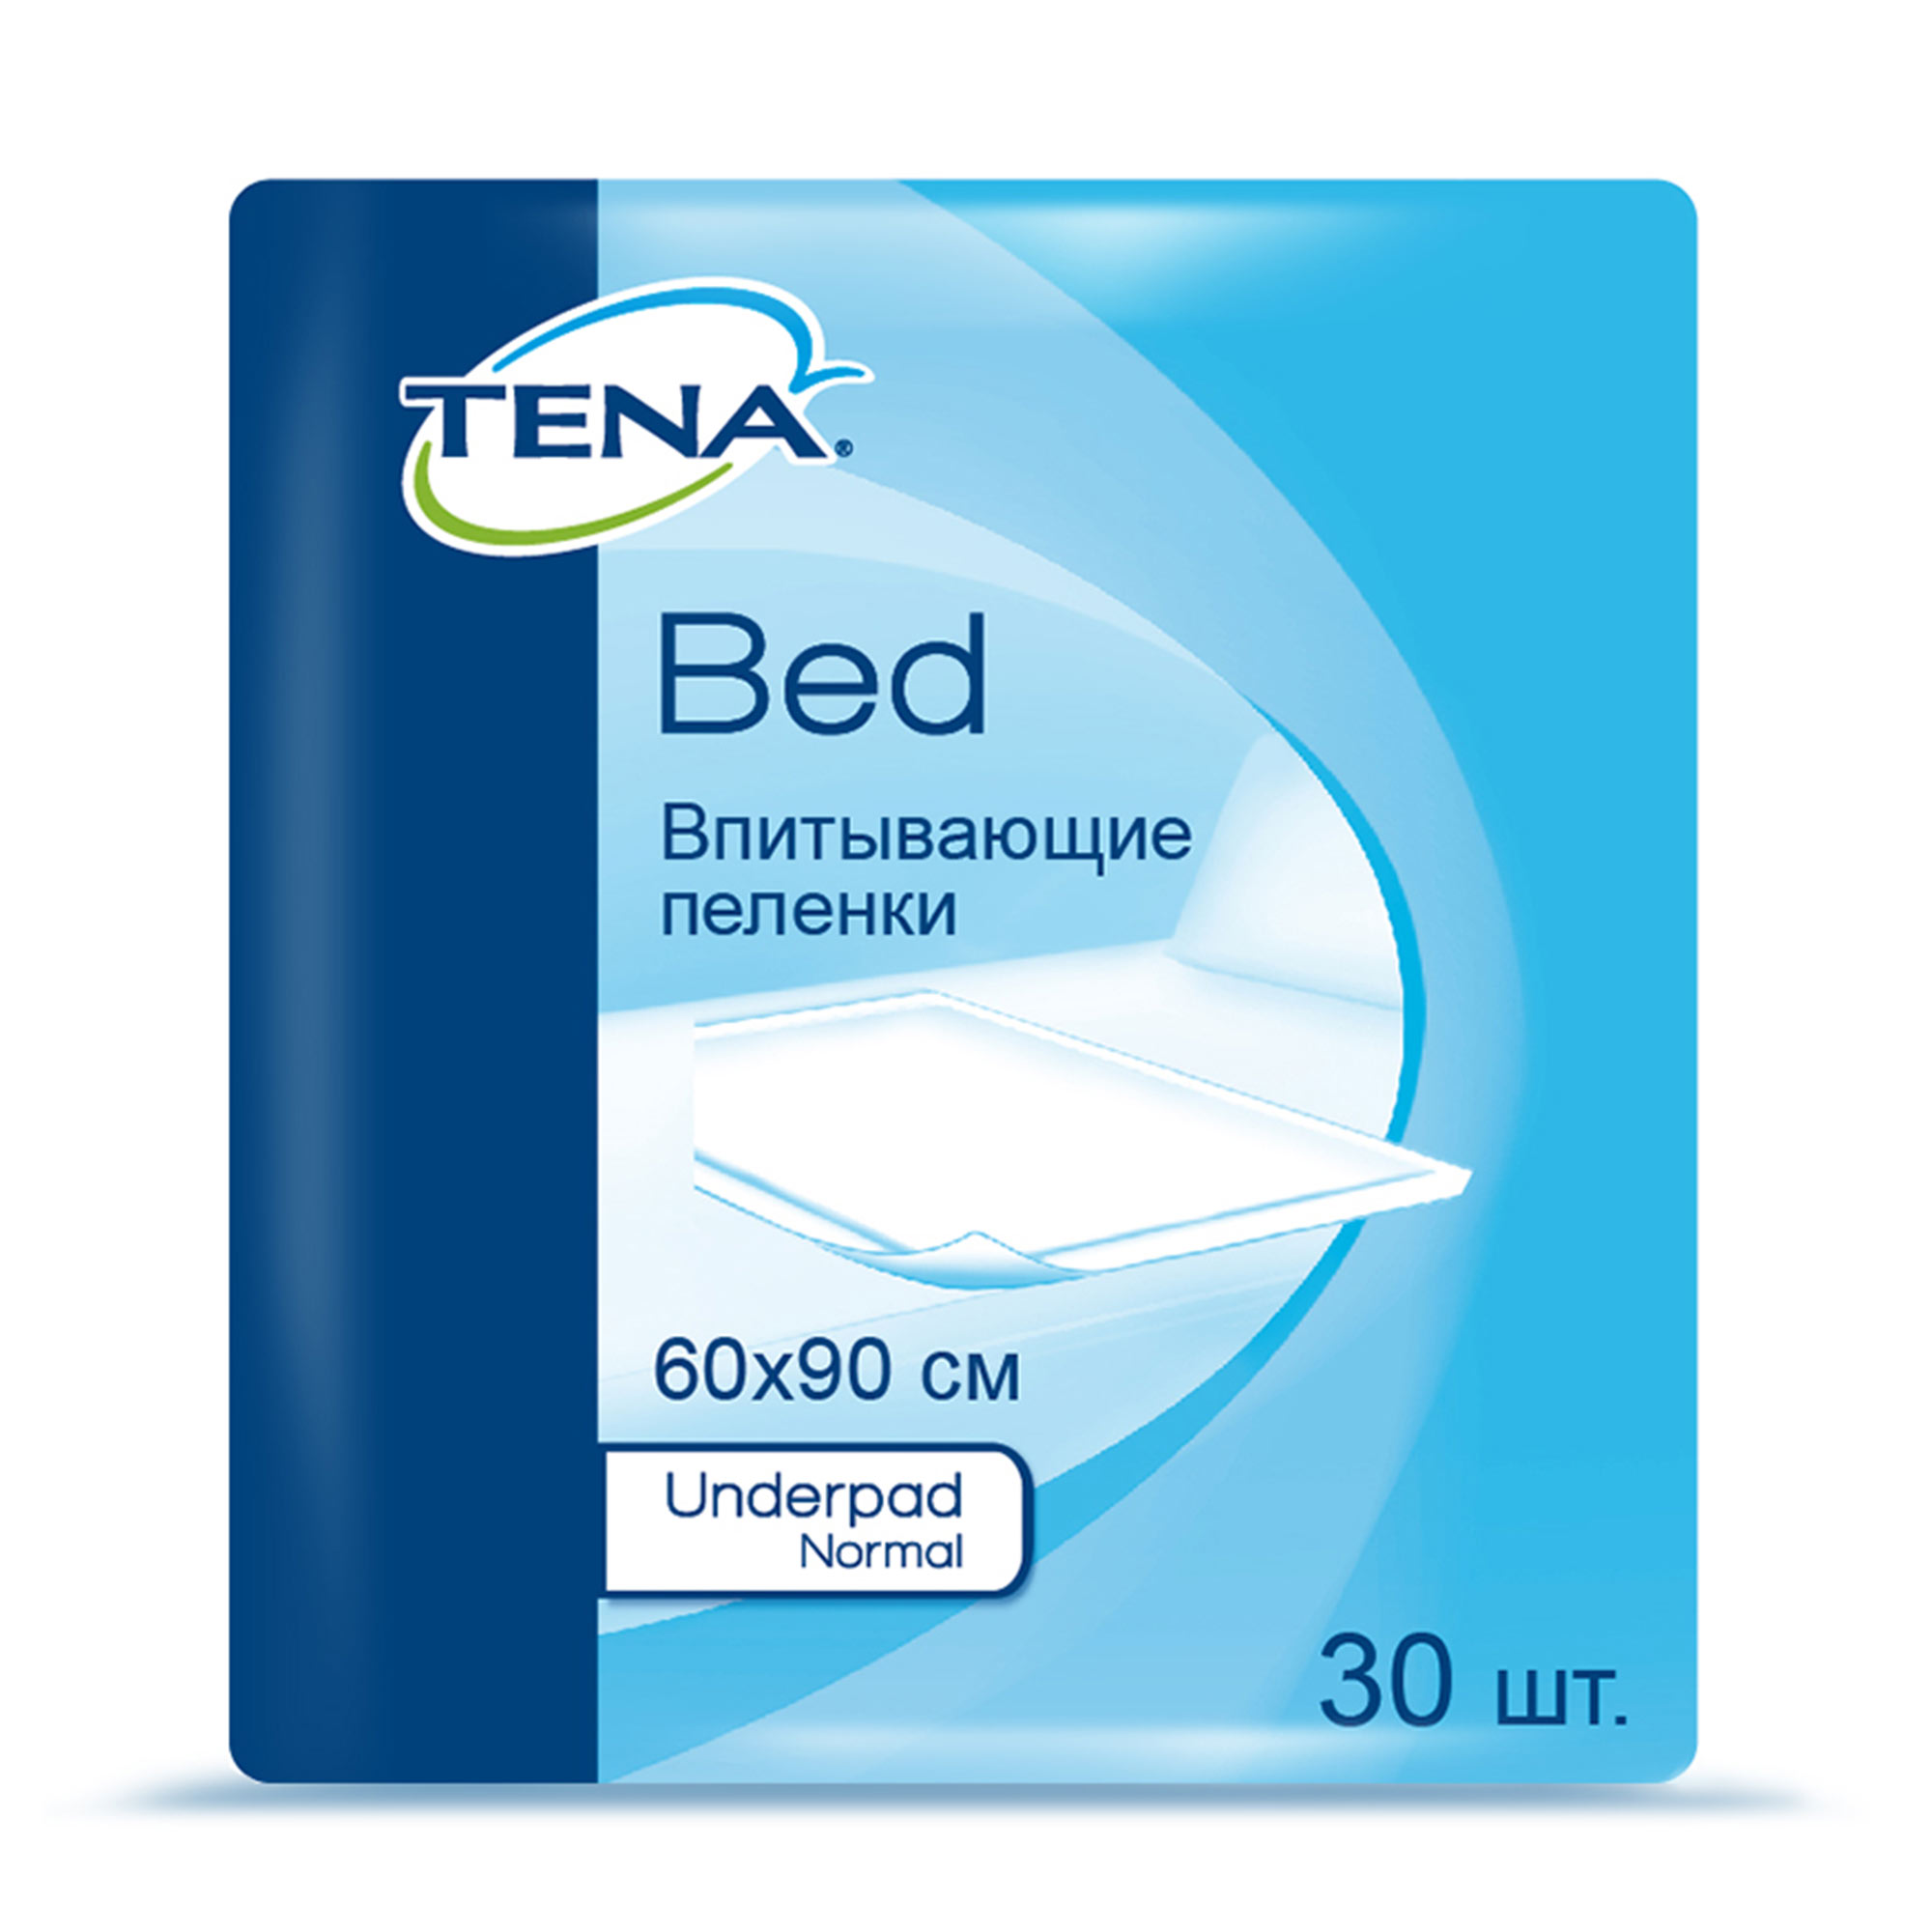 ТЕНА Бед Андерпад Нормал (TENA Bed Normal ) 60x90 cm, Простыни, 30 шт.